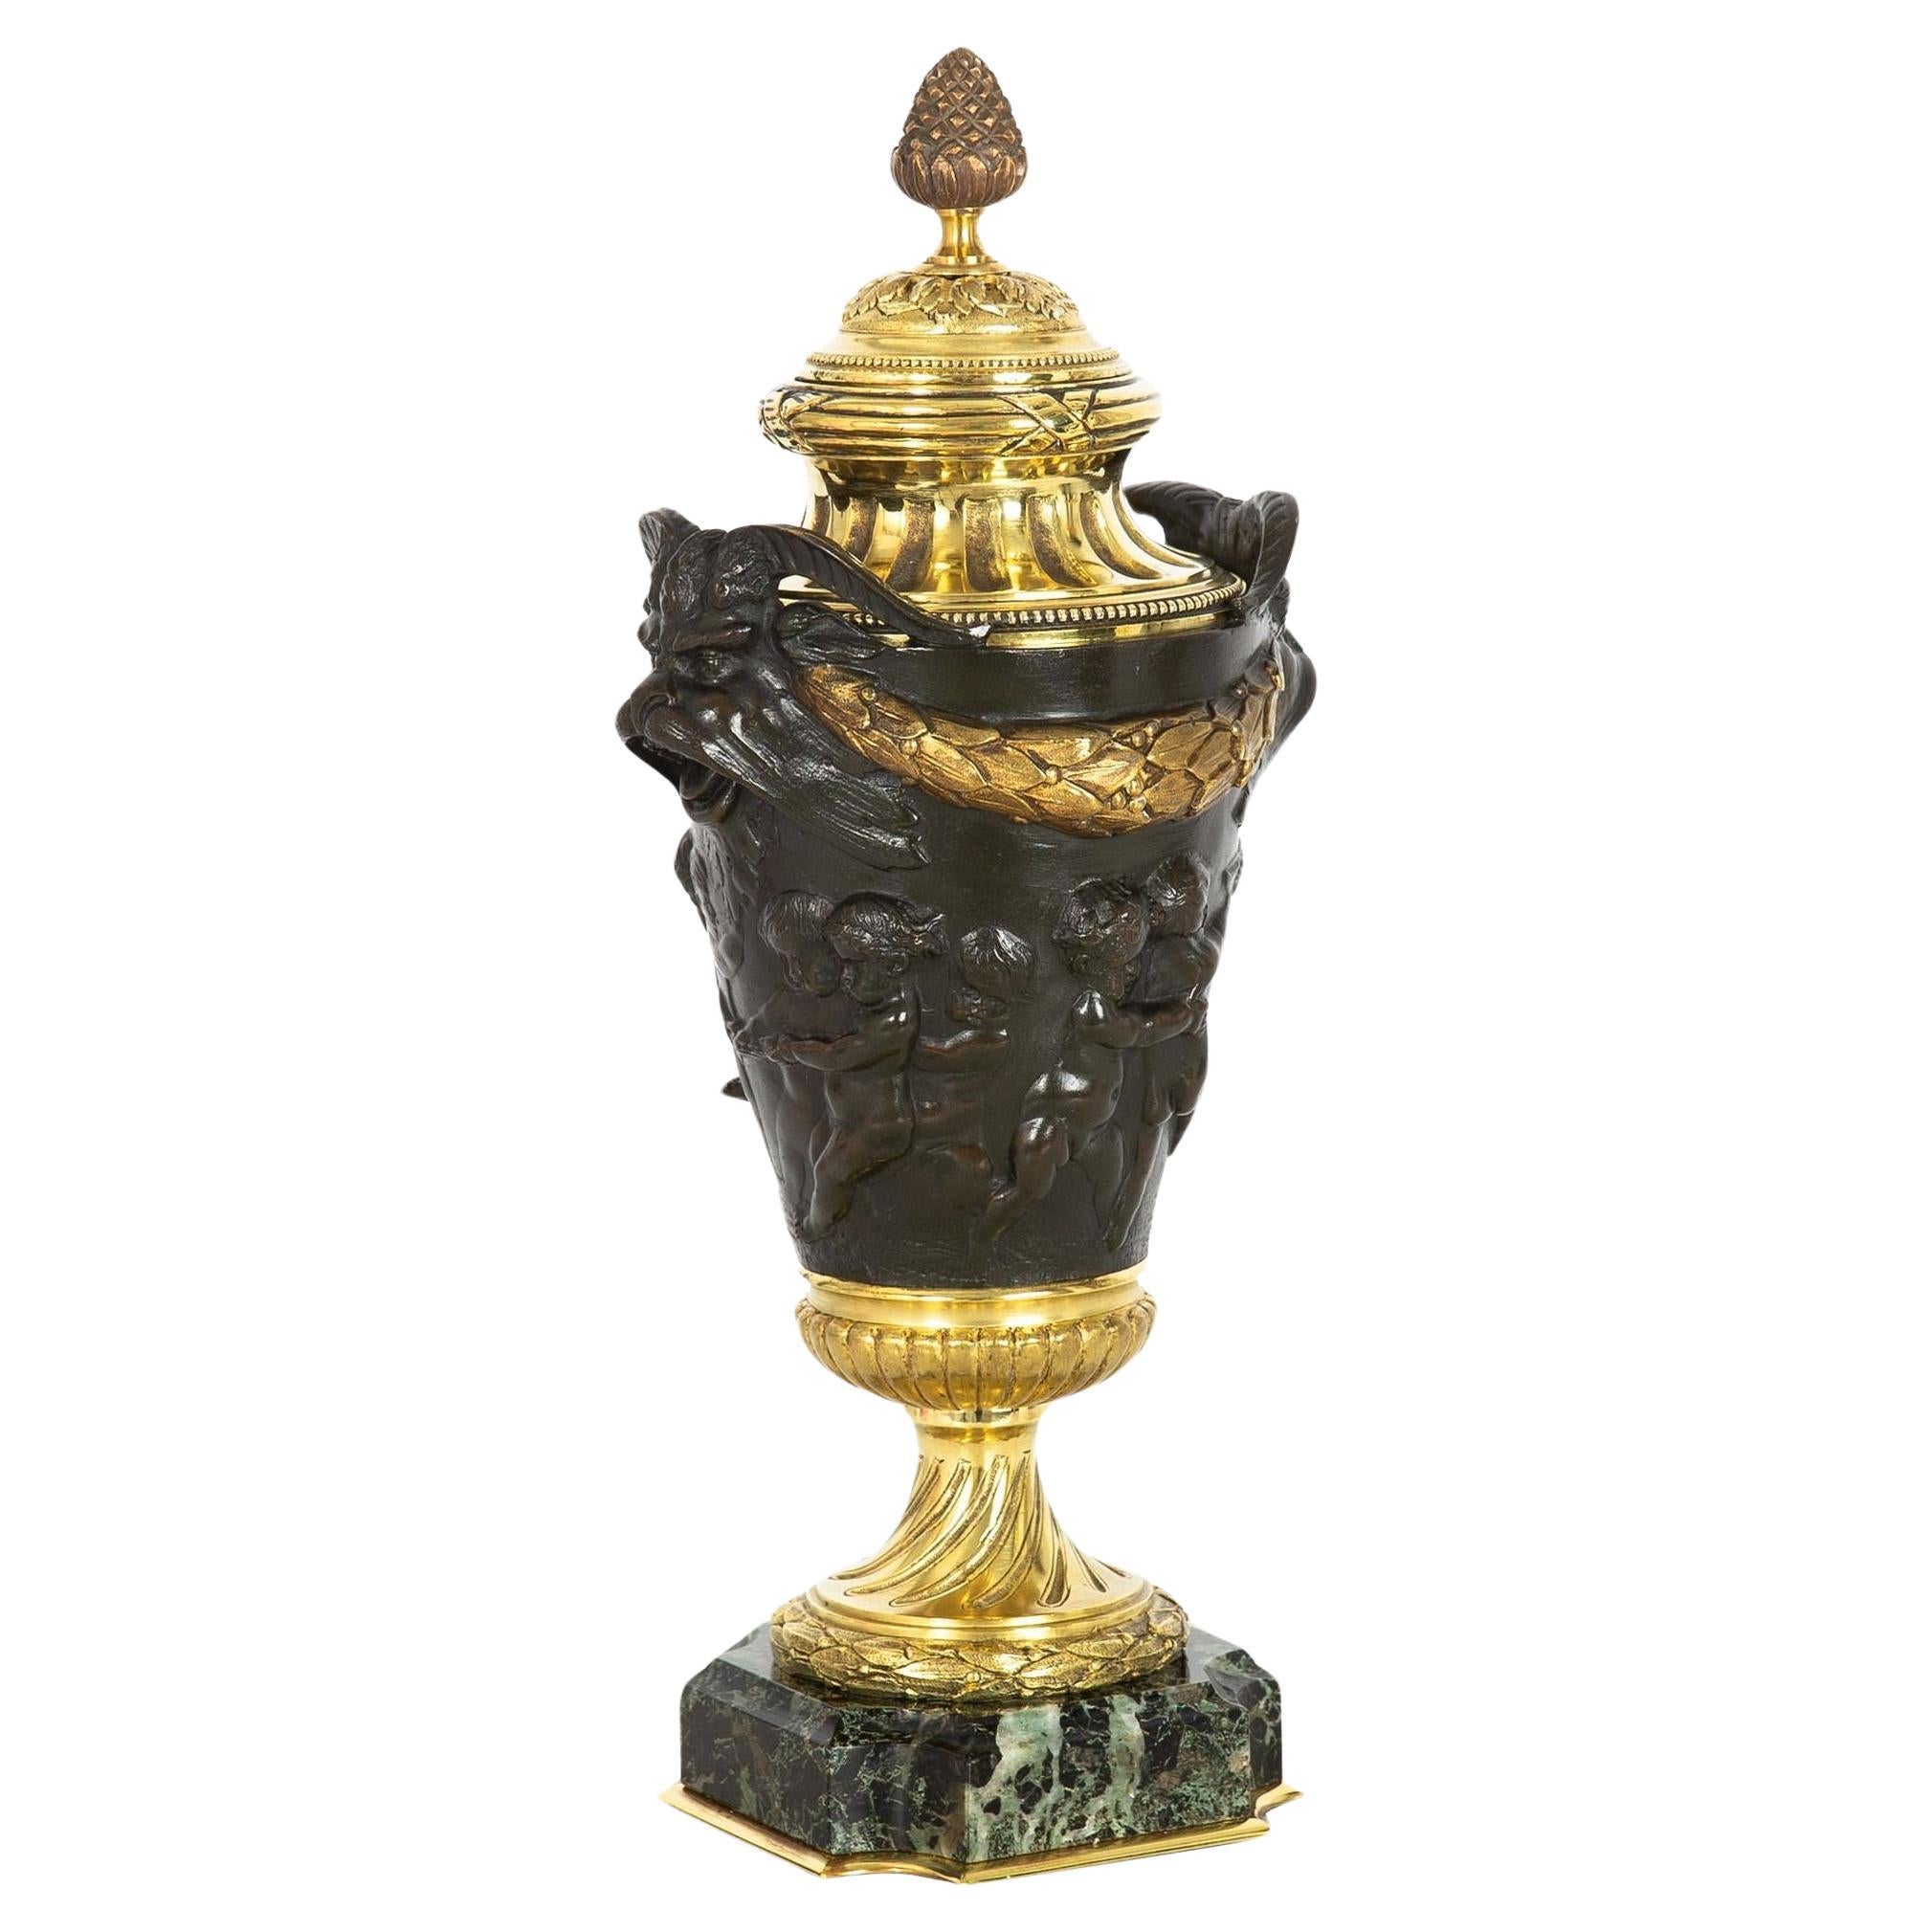 Grand Tour Bronze Cassolette Urn Vase after Claude Michel Clodion c. 1870